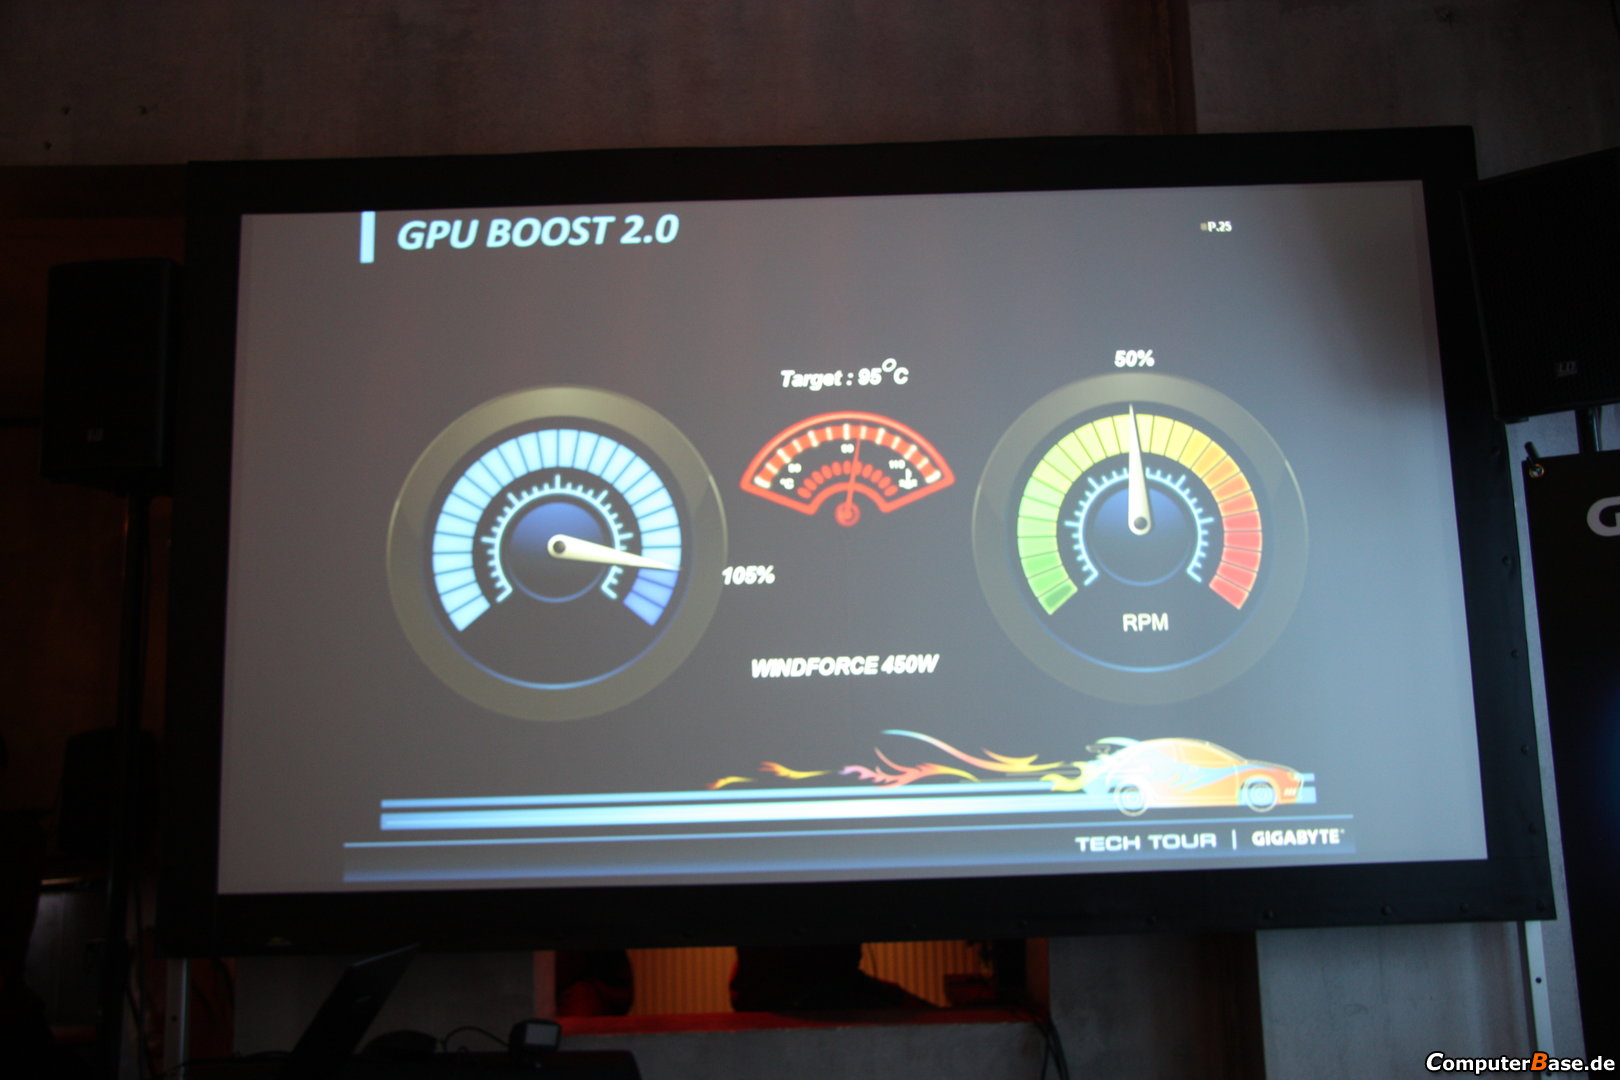 Gigabyte vyvíjí nový chladič WindForce 450W pro grafické karty